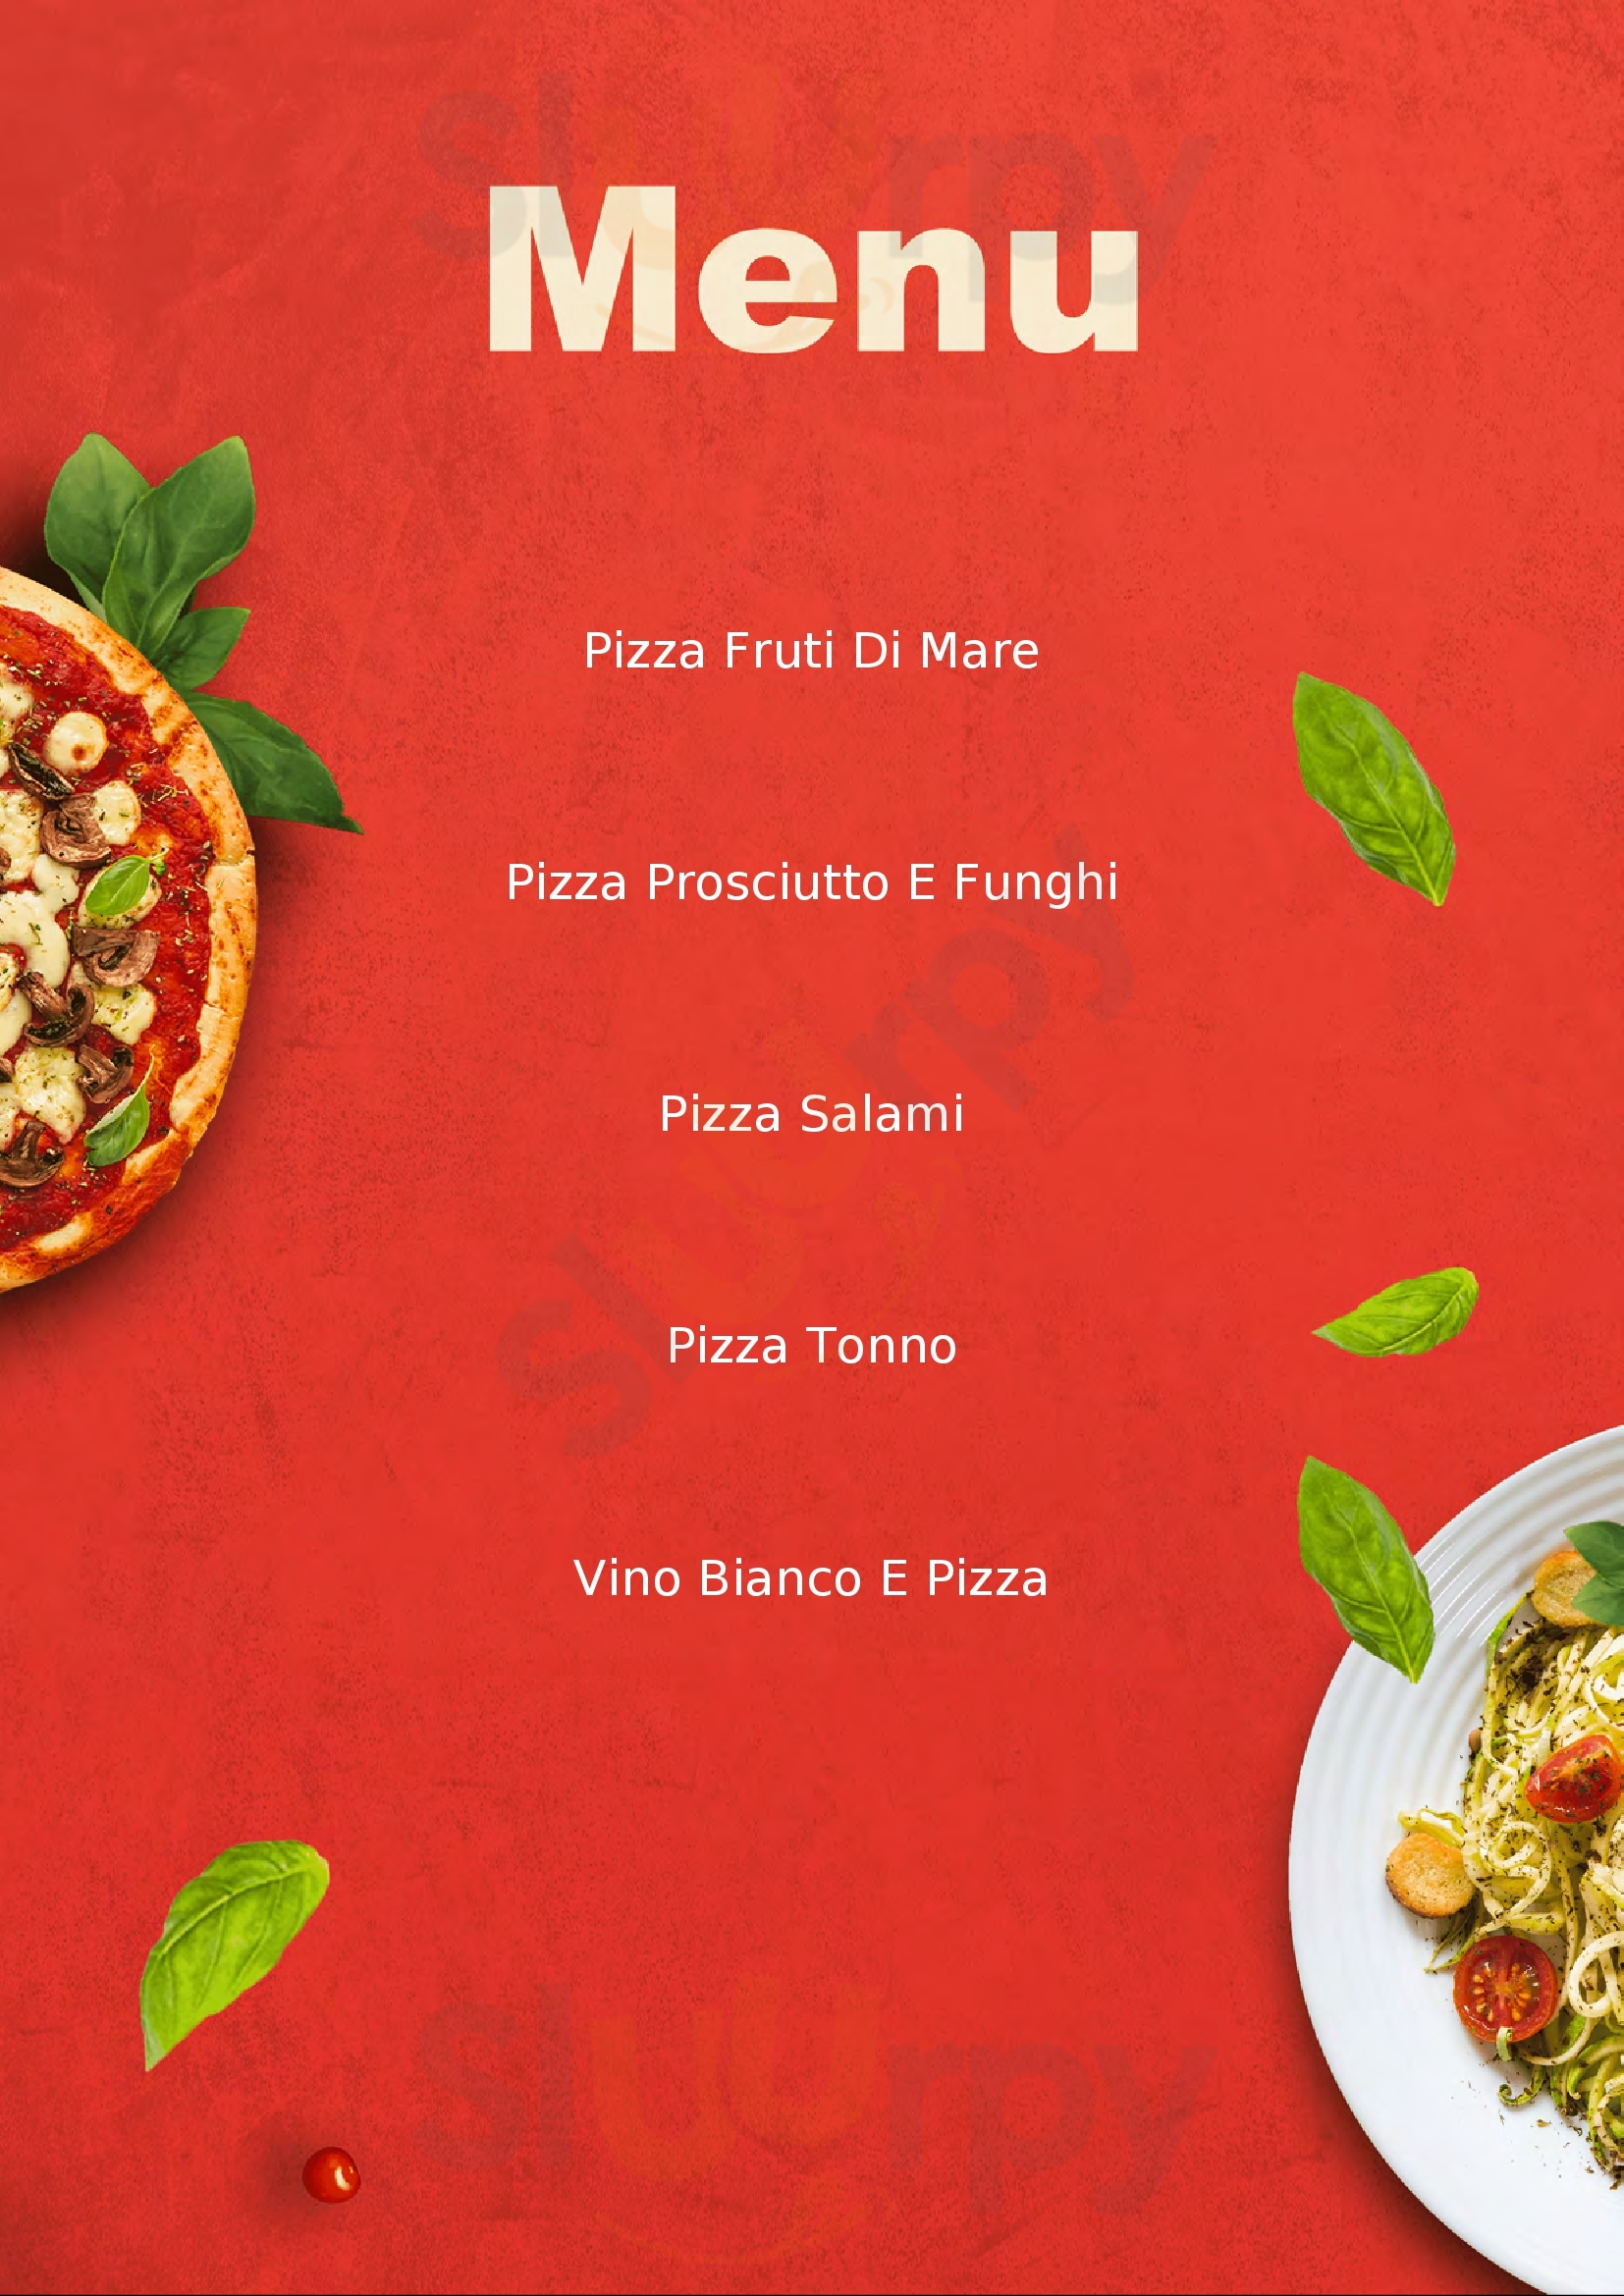 Baseggio Pizza Square Bardolino menù 1 pagina